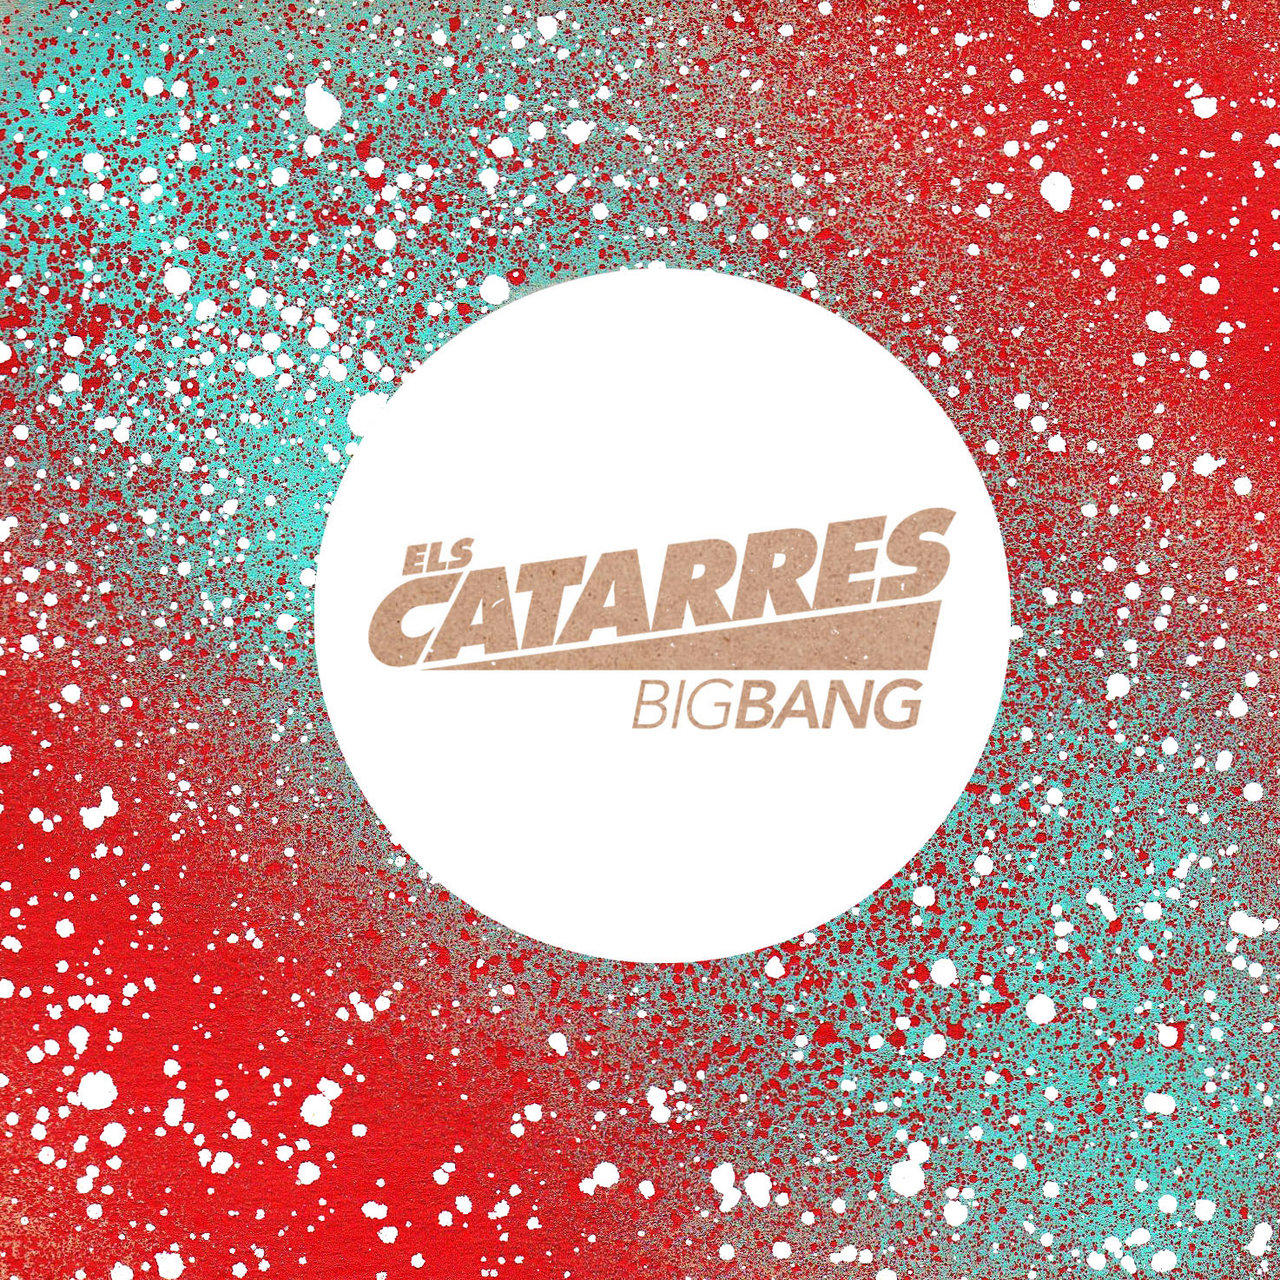 Els Catarres Big Bang cover artwork